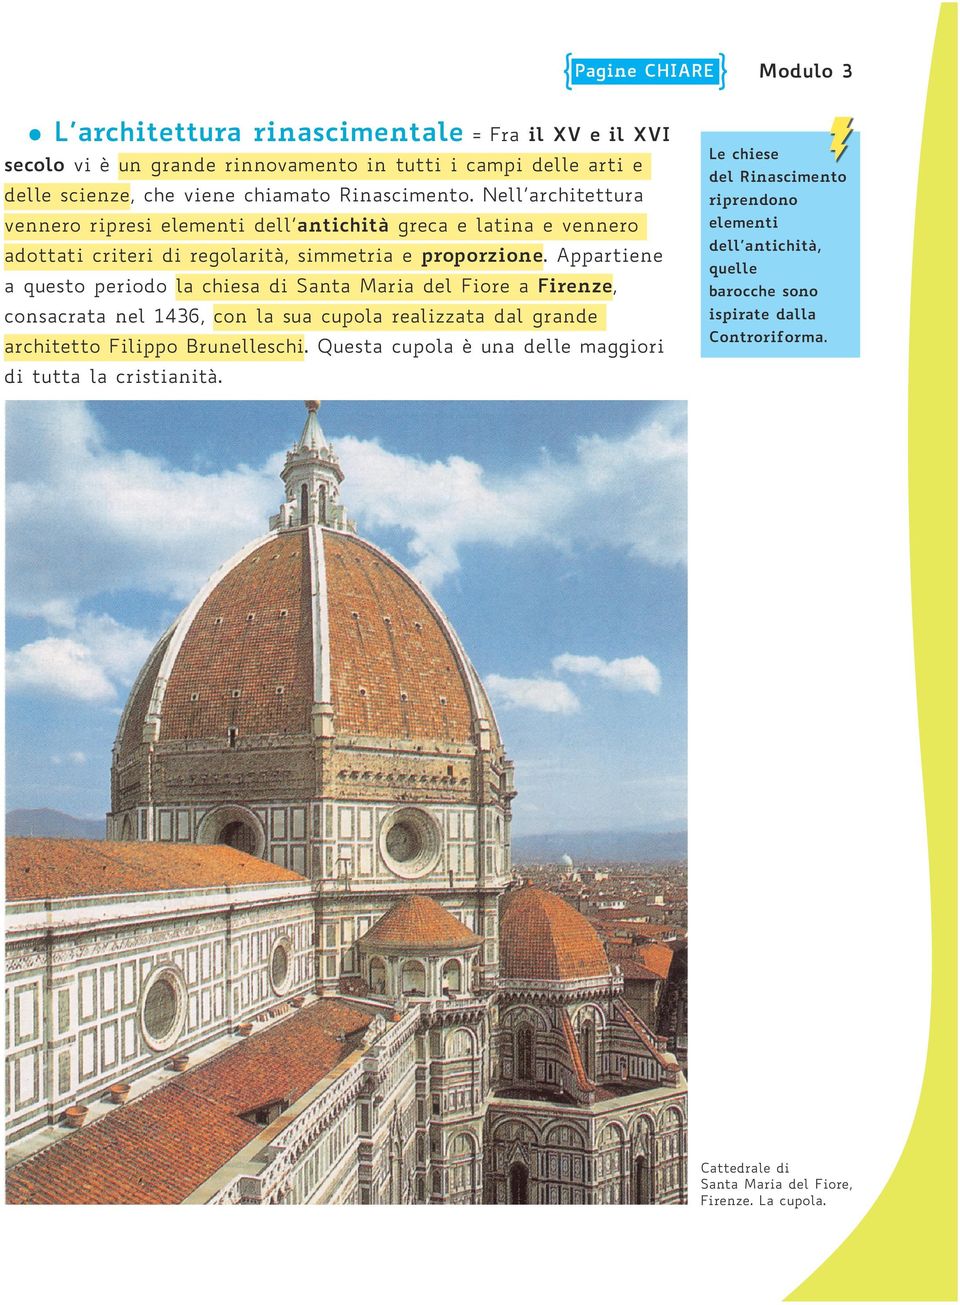 Appartiene a questo periodo la chiesa di Santa Maria del Fiore a Firenze, consacrata nel 1436, con la sua cupola realizzata dal grande architetto Filippo Brunelleschi.